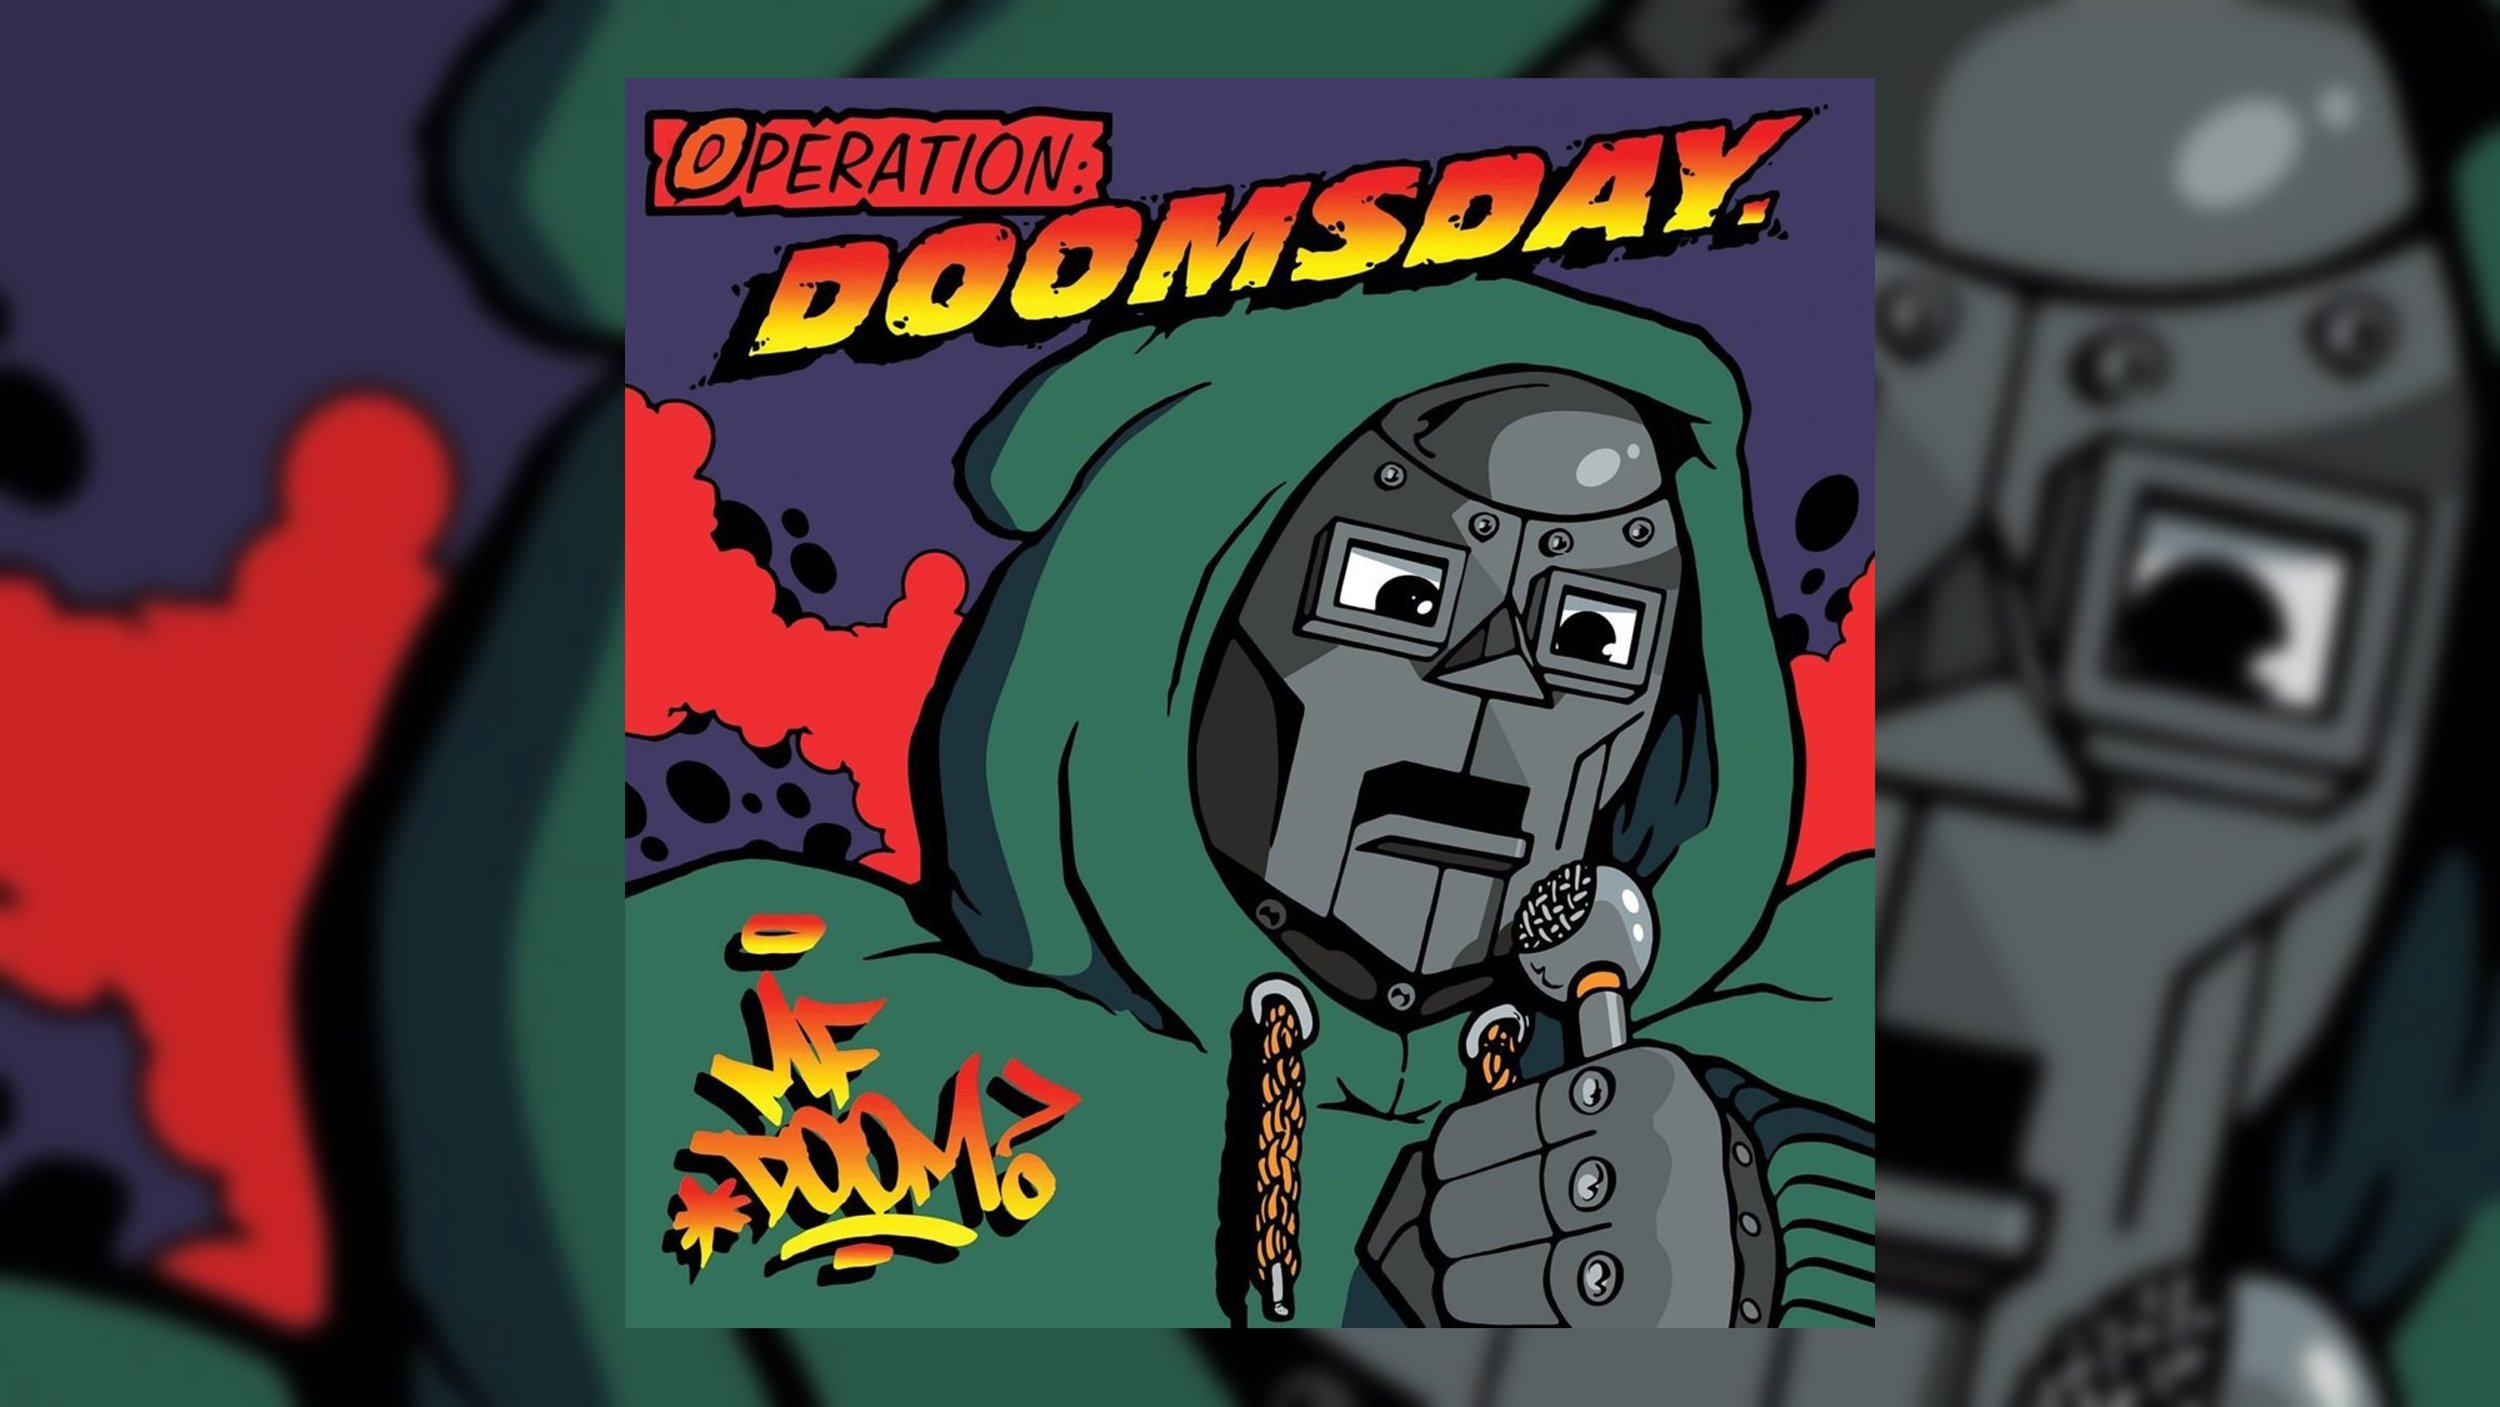 MF Doom - Operation Doomsday Double LP